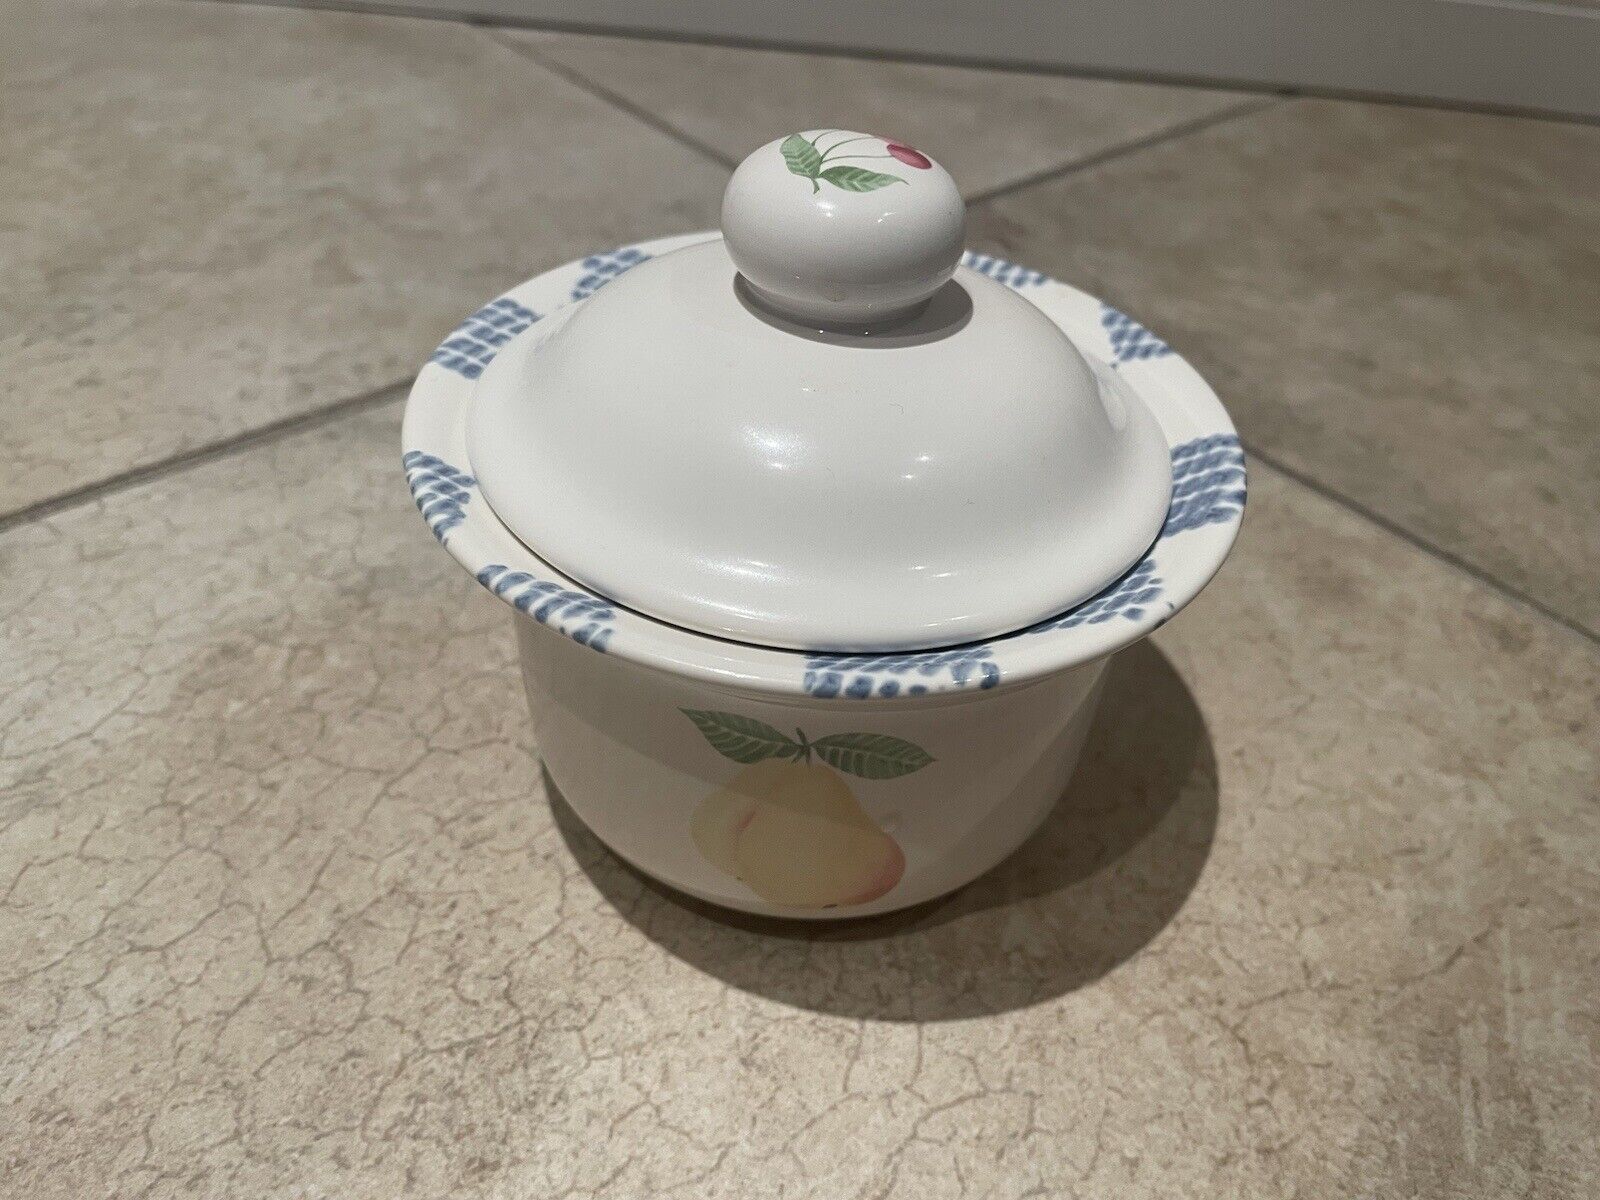 Vintage Pfaltzgraff sugar bowl with lid.